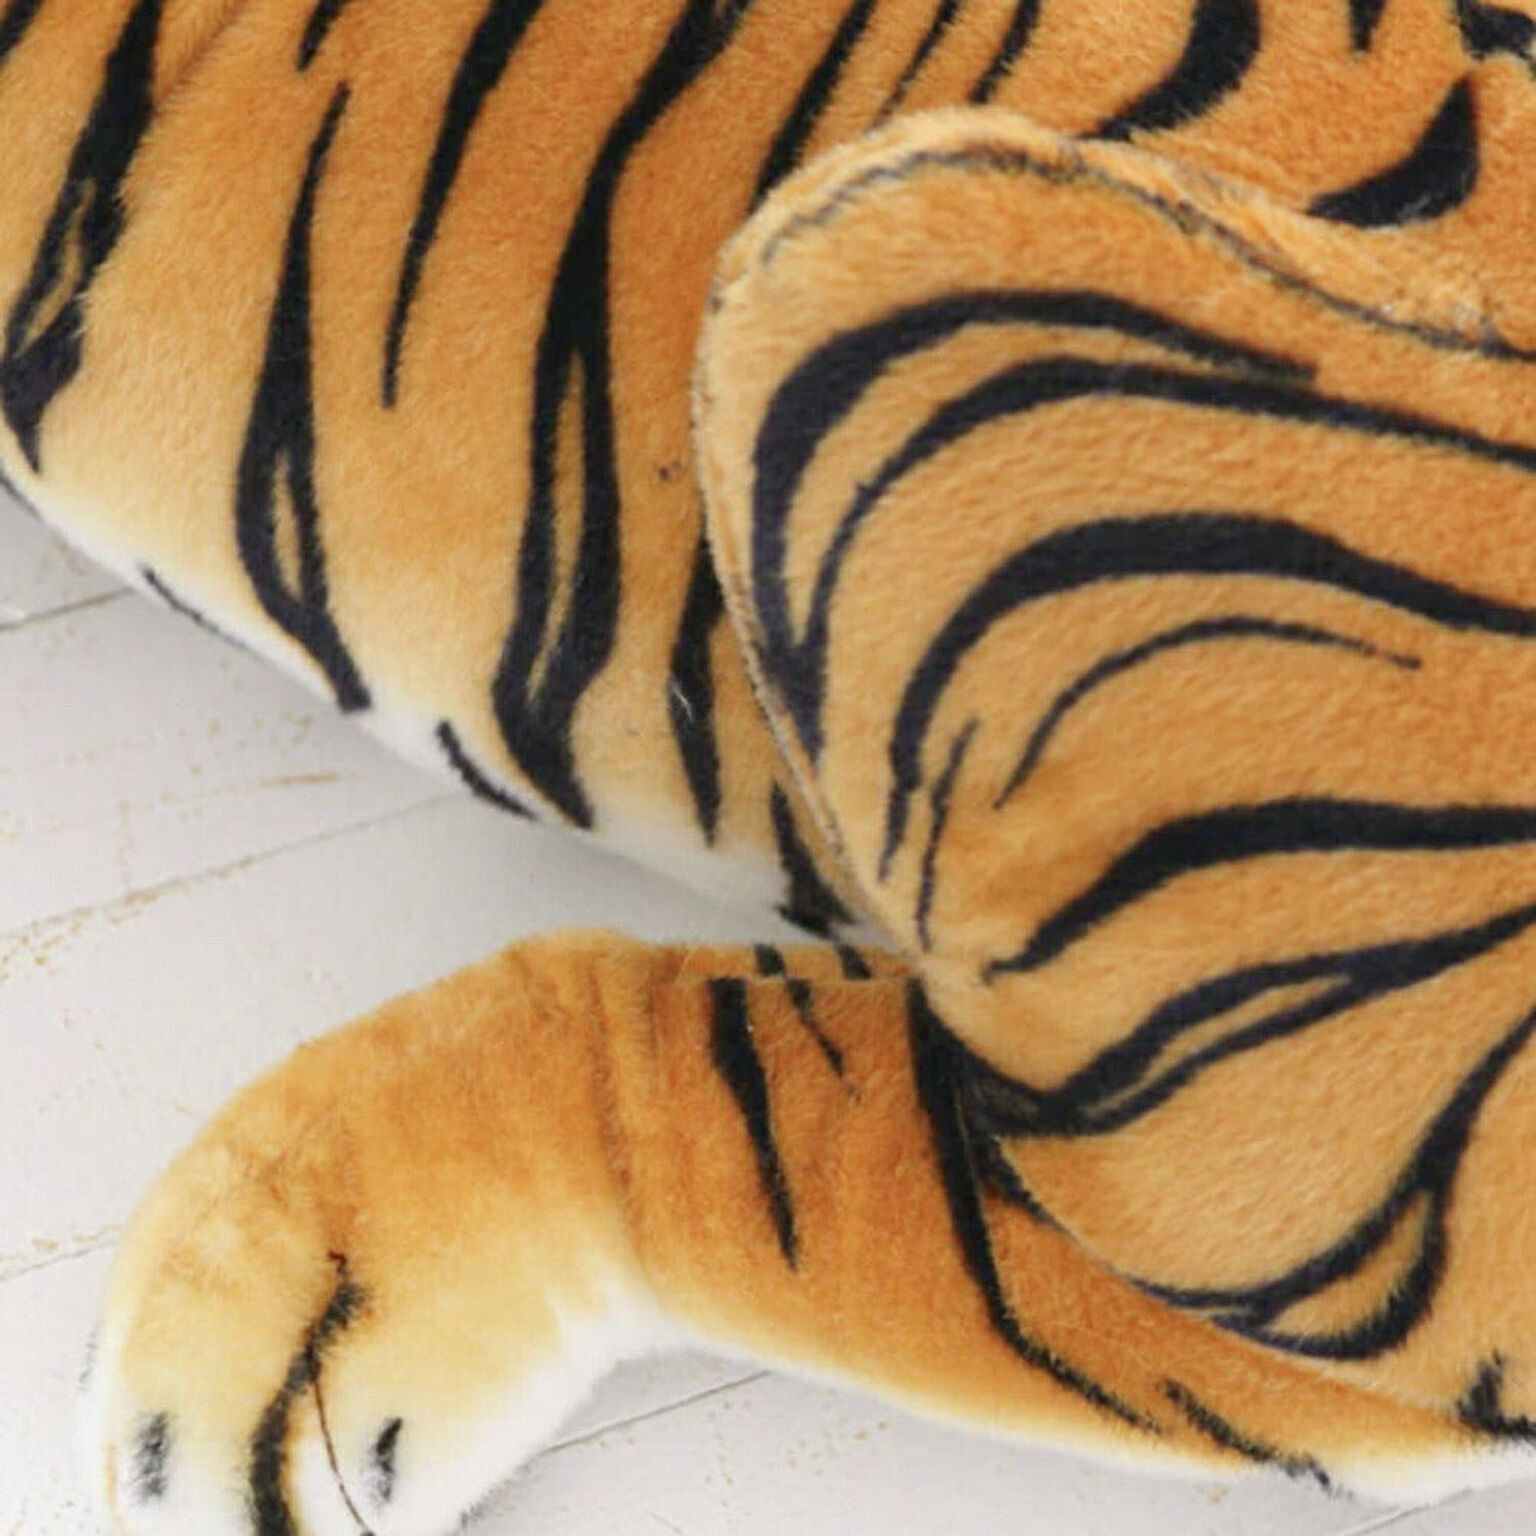 ぬいぐるみ トラ 虎 タイガー クッション 特大 1.1m 抱き枕 アニマル